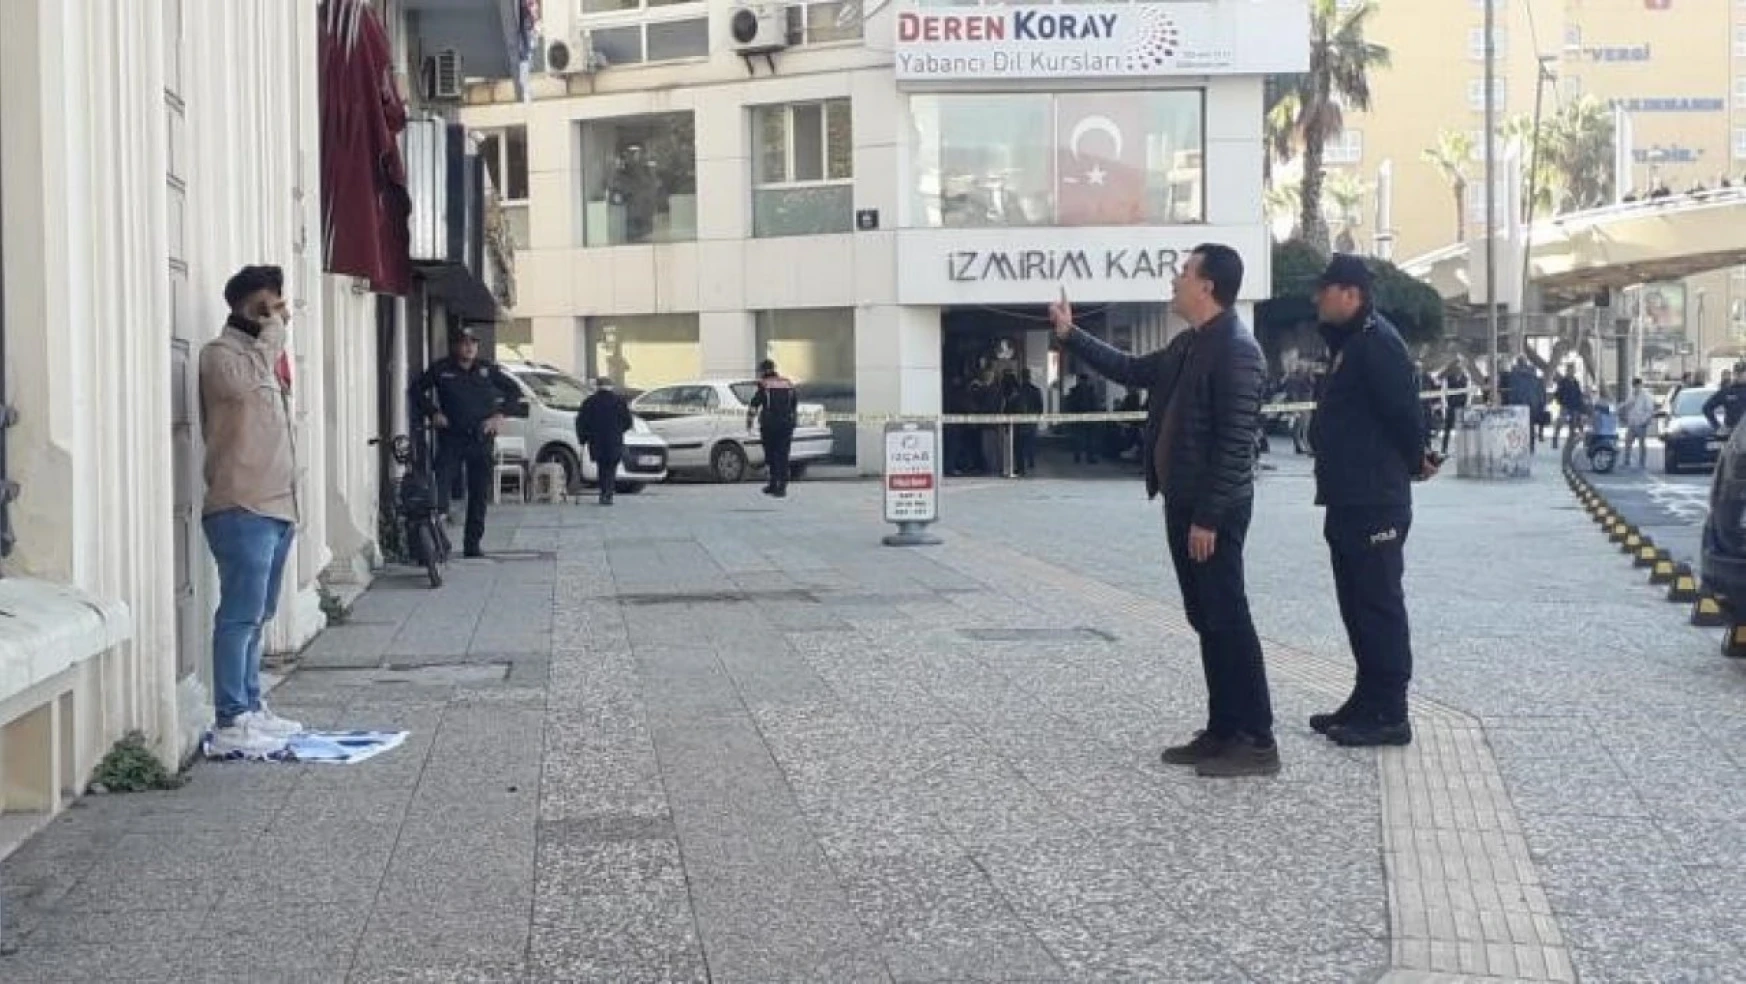 İzmir'in Konak ilçesinde bir şahıs, aracını yol ortasına bırakıp başına tabanca dayadı. Ayağının altında İsrail bayrağı olan ve bir elinde de Türk bayrağı bulunan şahsı çok sayıda polis ekiplerinin ikna çabaları sürüyor.